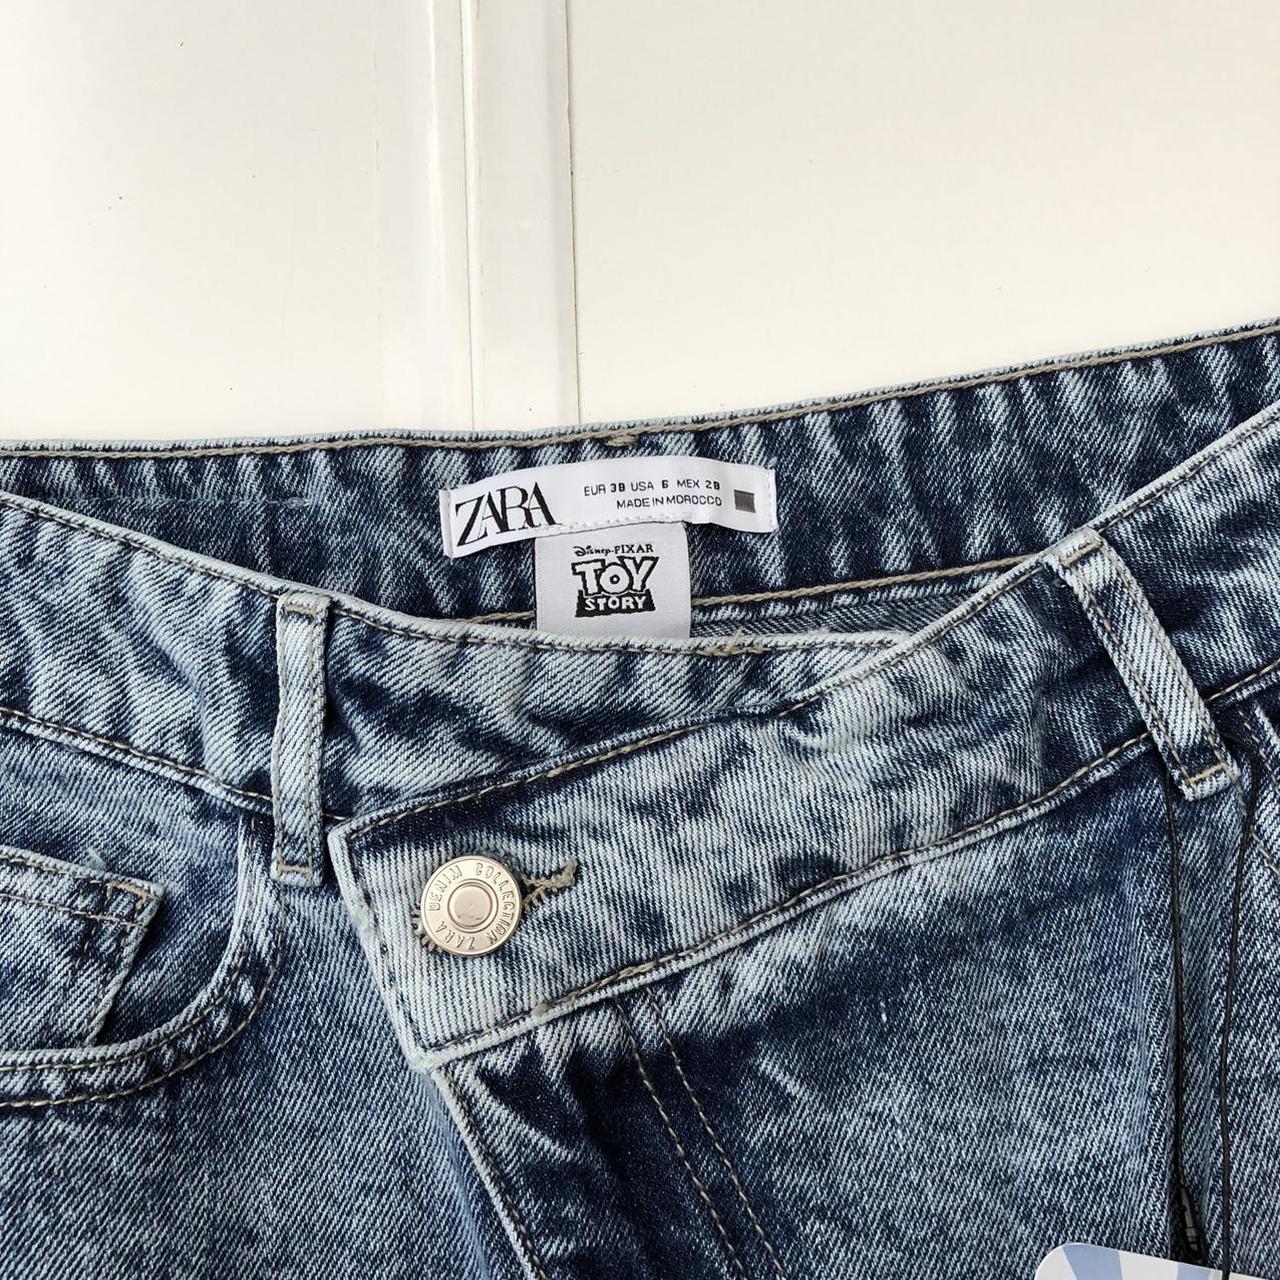 Zara Women's Jeans | Depop